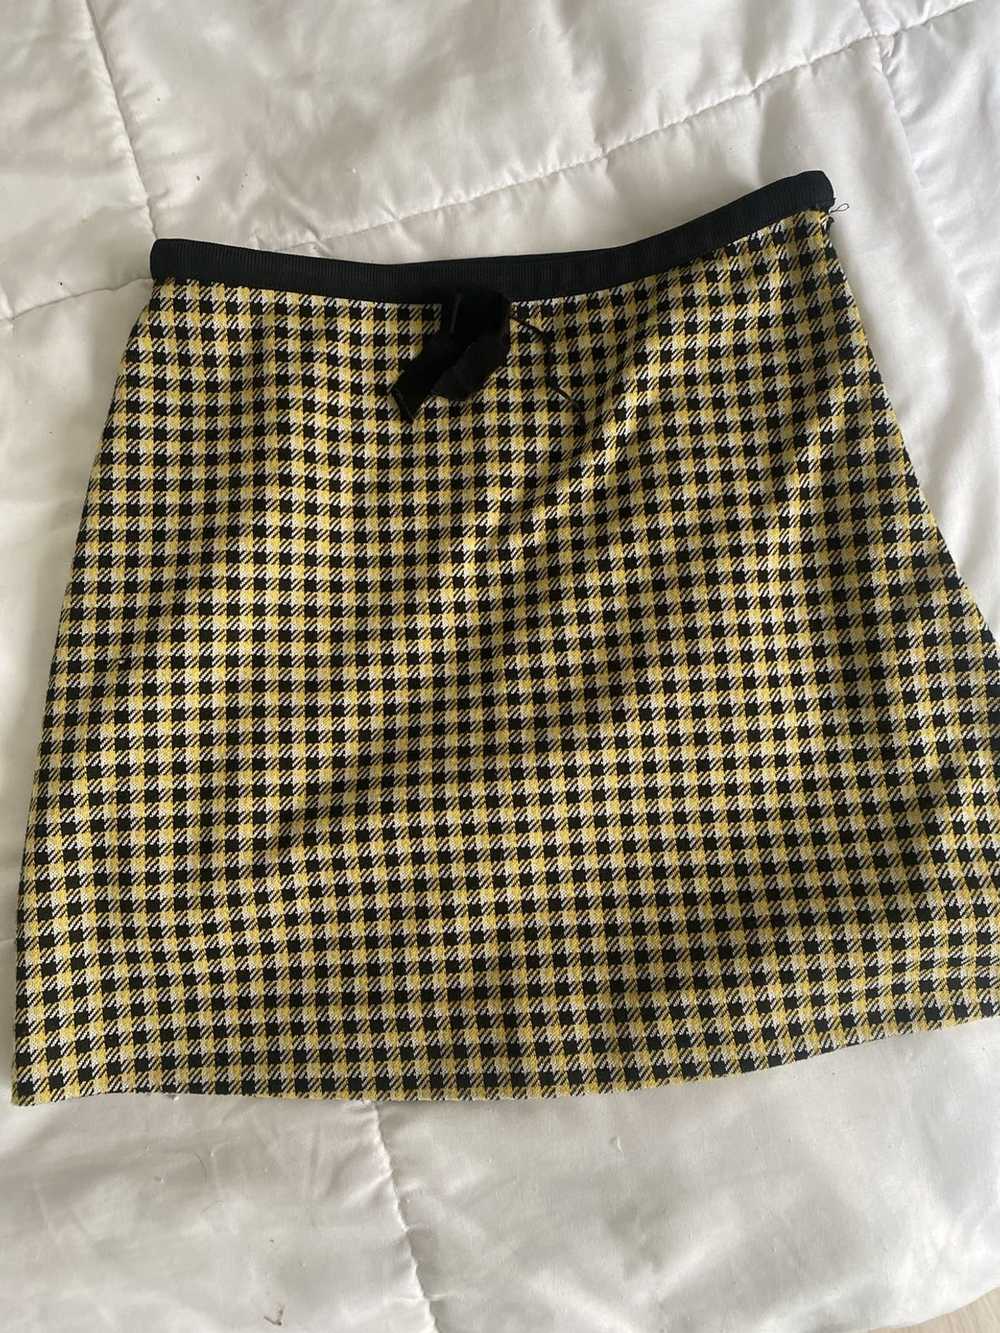 Miu Miu Miu Miu Houndstooth Jersey Skirt - image 2